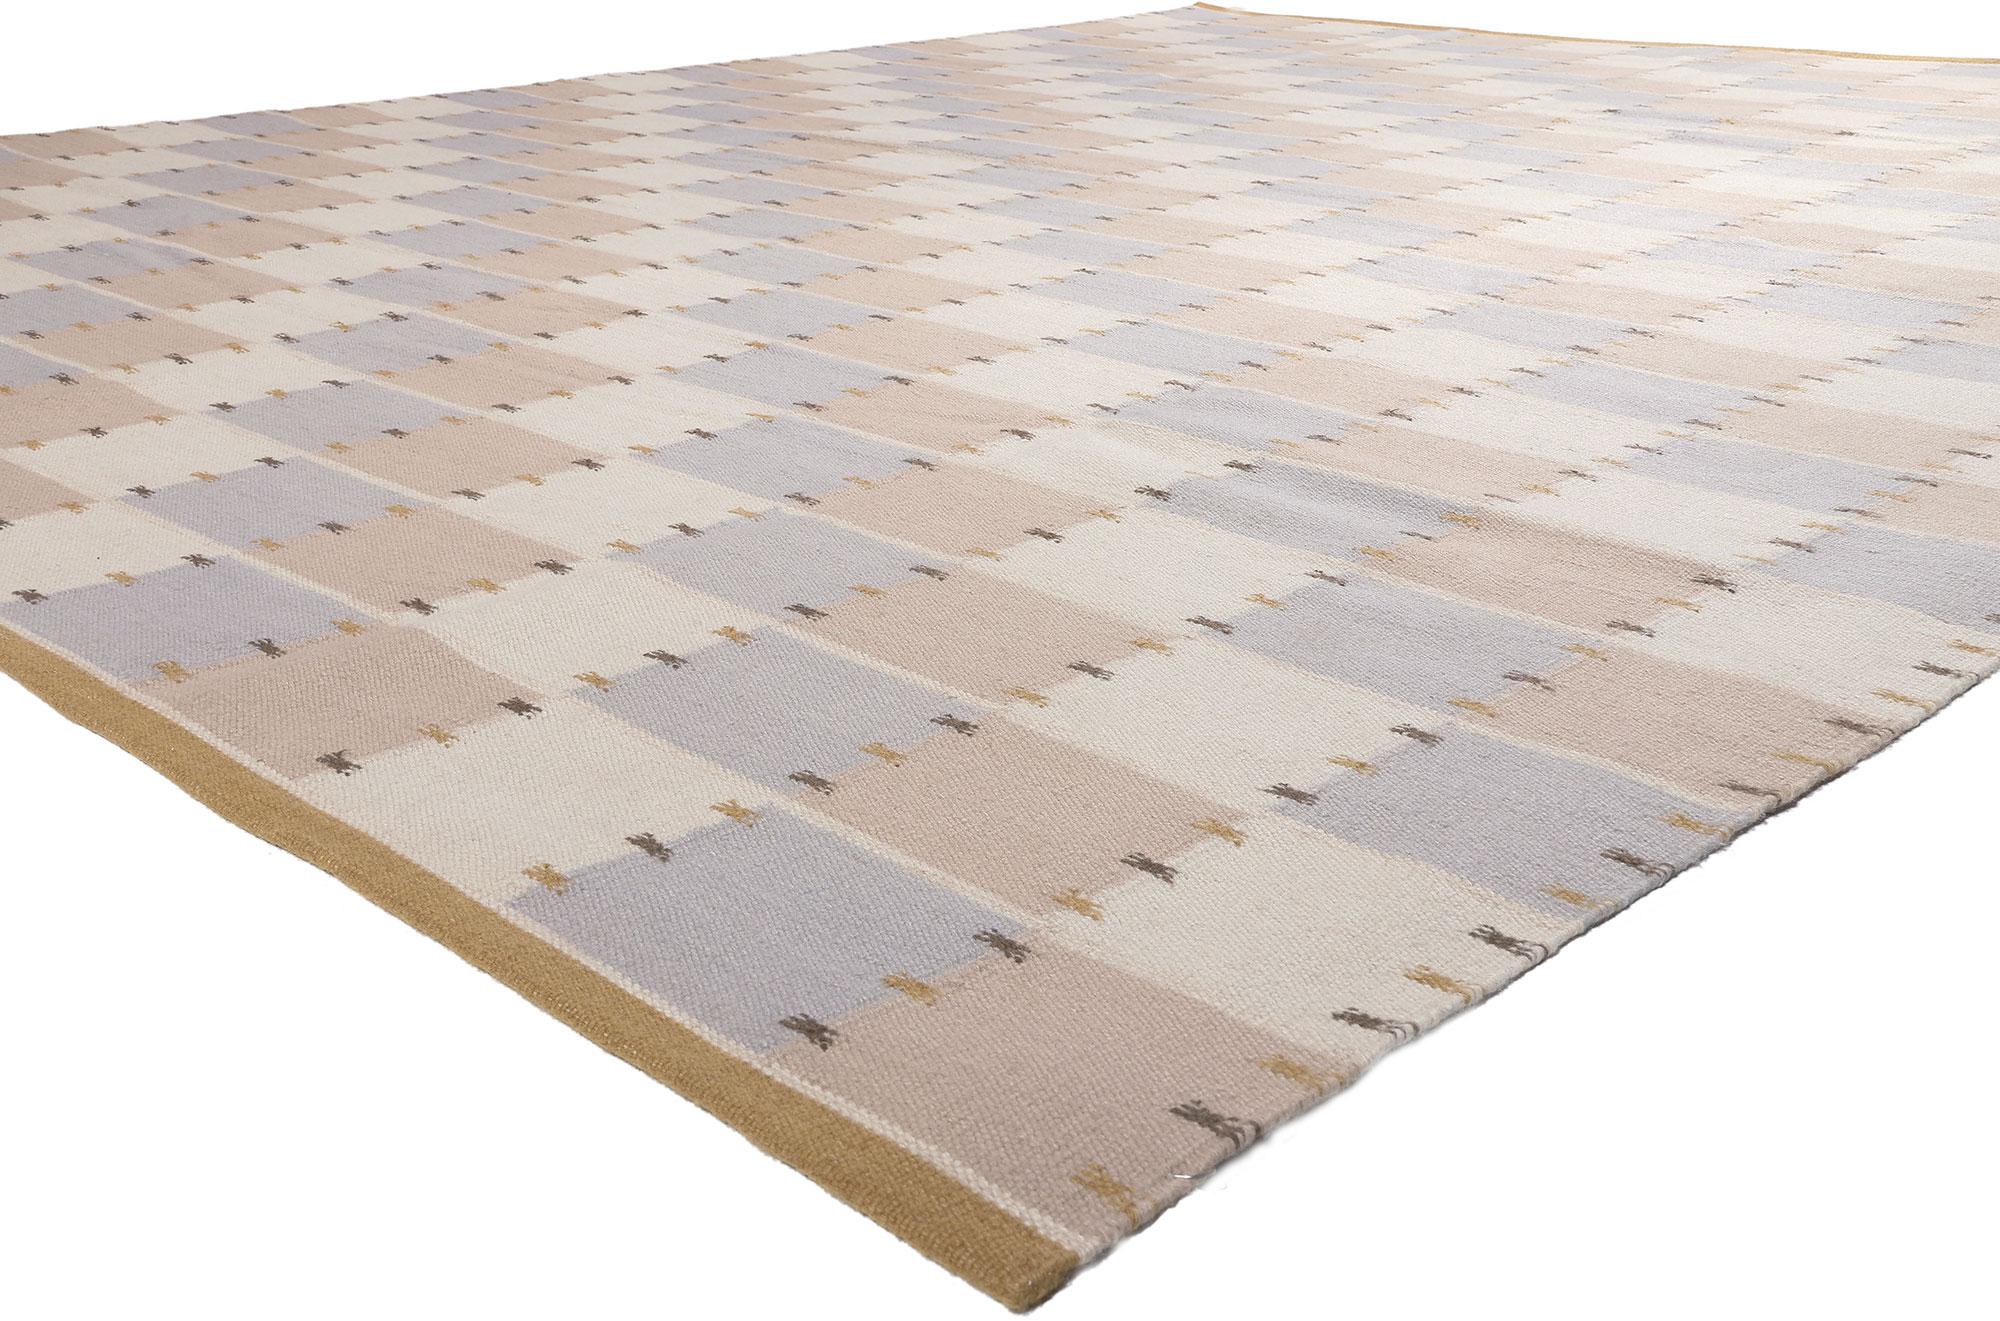 30951 Neuer schwedisch inspirierter Kilim-Teppich, 12'01 x 15'01.
Skandinavische Moderne trifft auf minimalistischen Kubismus in diesem handgewebten, schwedisch inspirierten Kelimteppich aus Wolle. Das einfache, lineare Design und die minimale